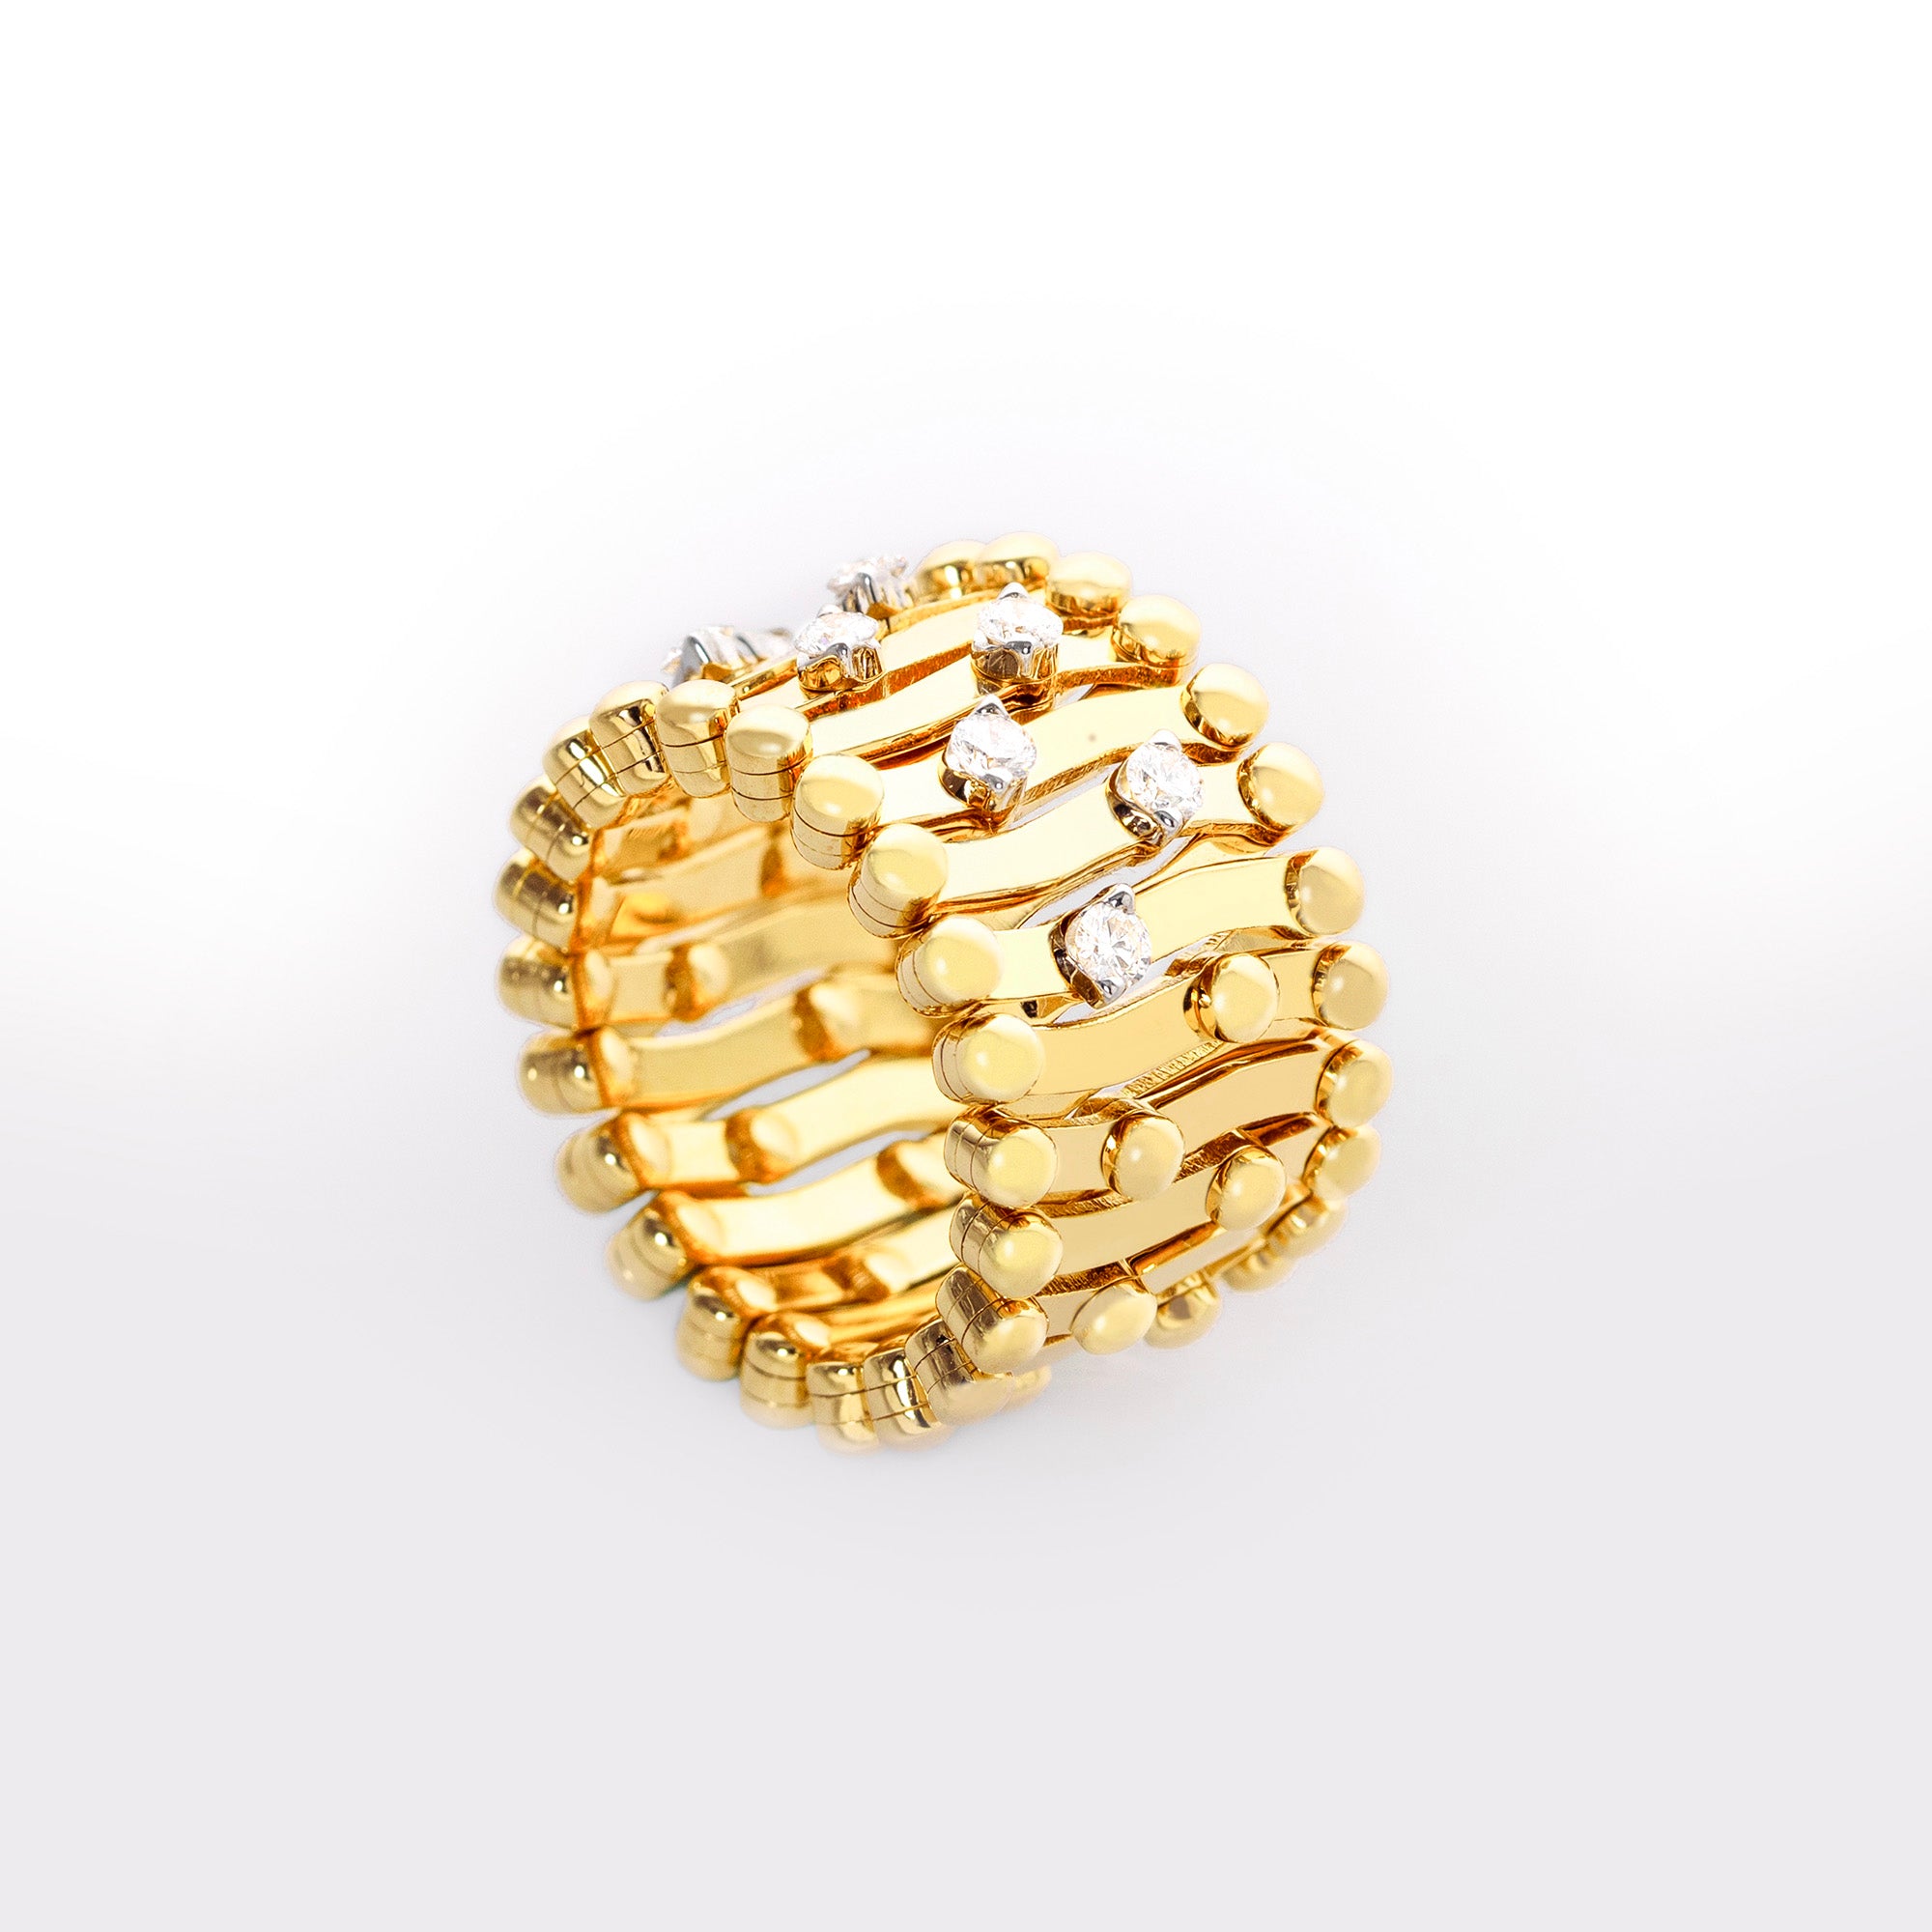 Serafino 1492 Extendible Ring Bracelet